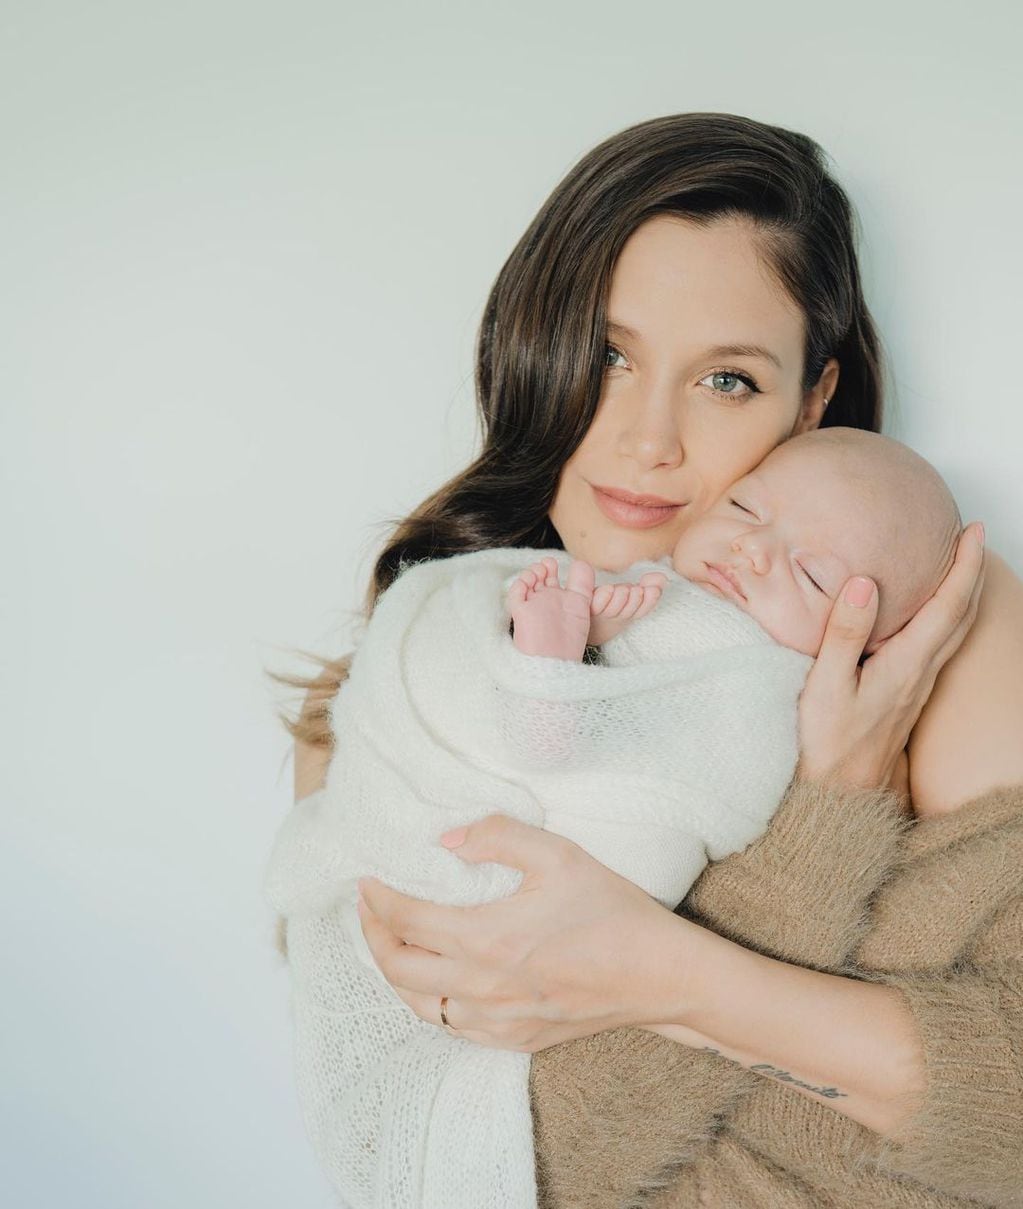 La actriz se mostró muy feliz con su hijos, Salvador en brazos en las redes sociales / Foto: Instagram